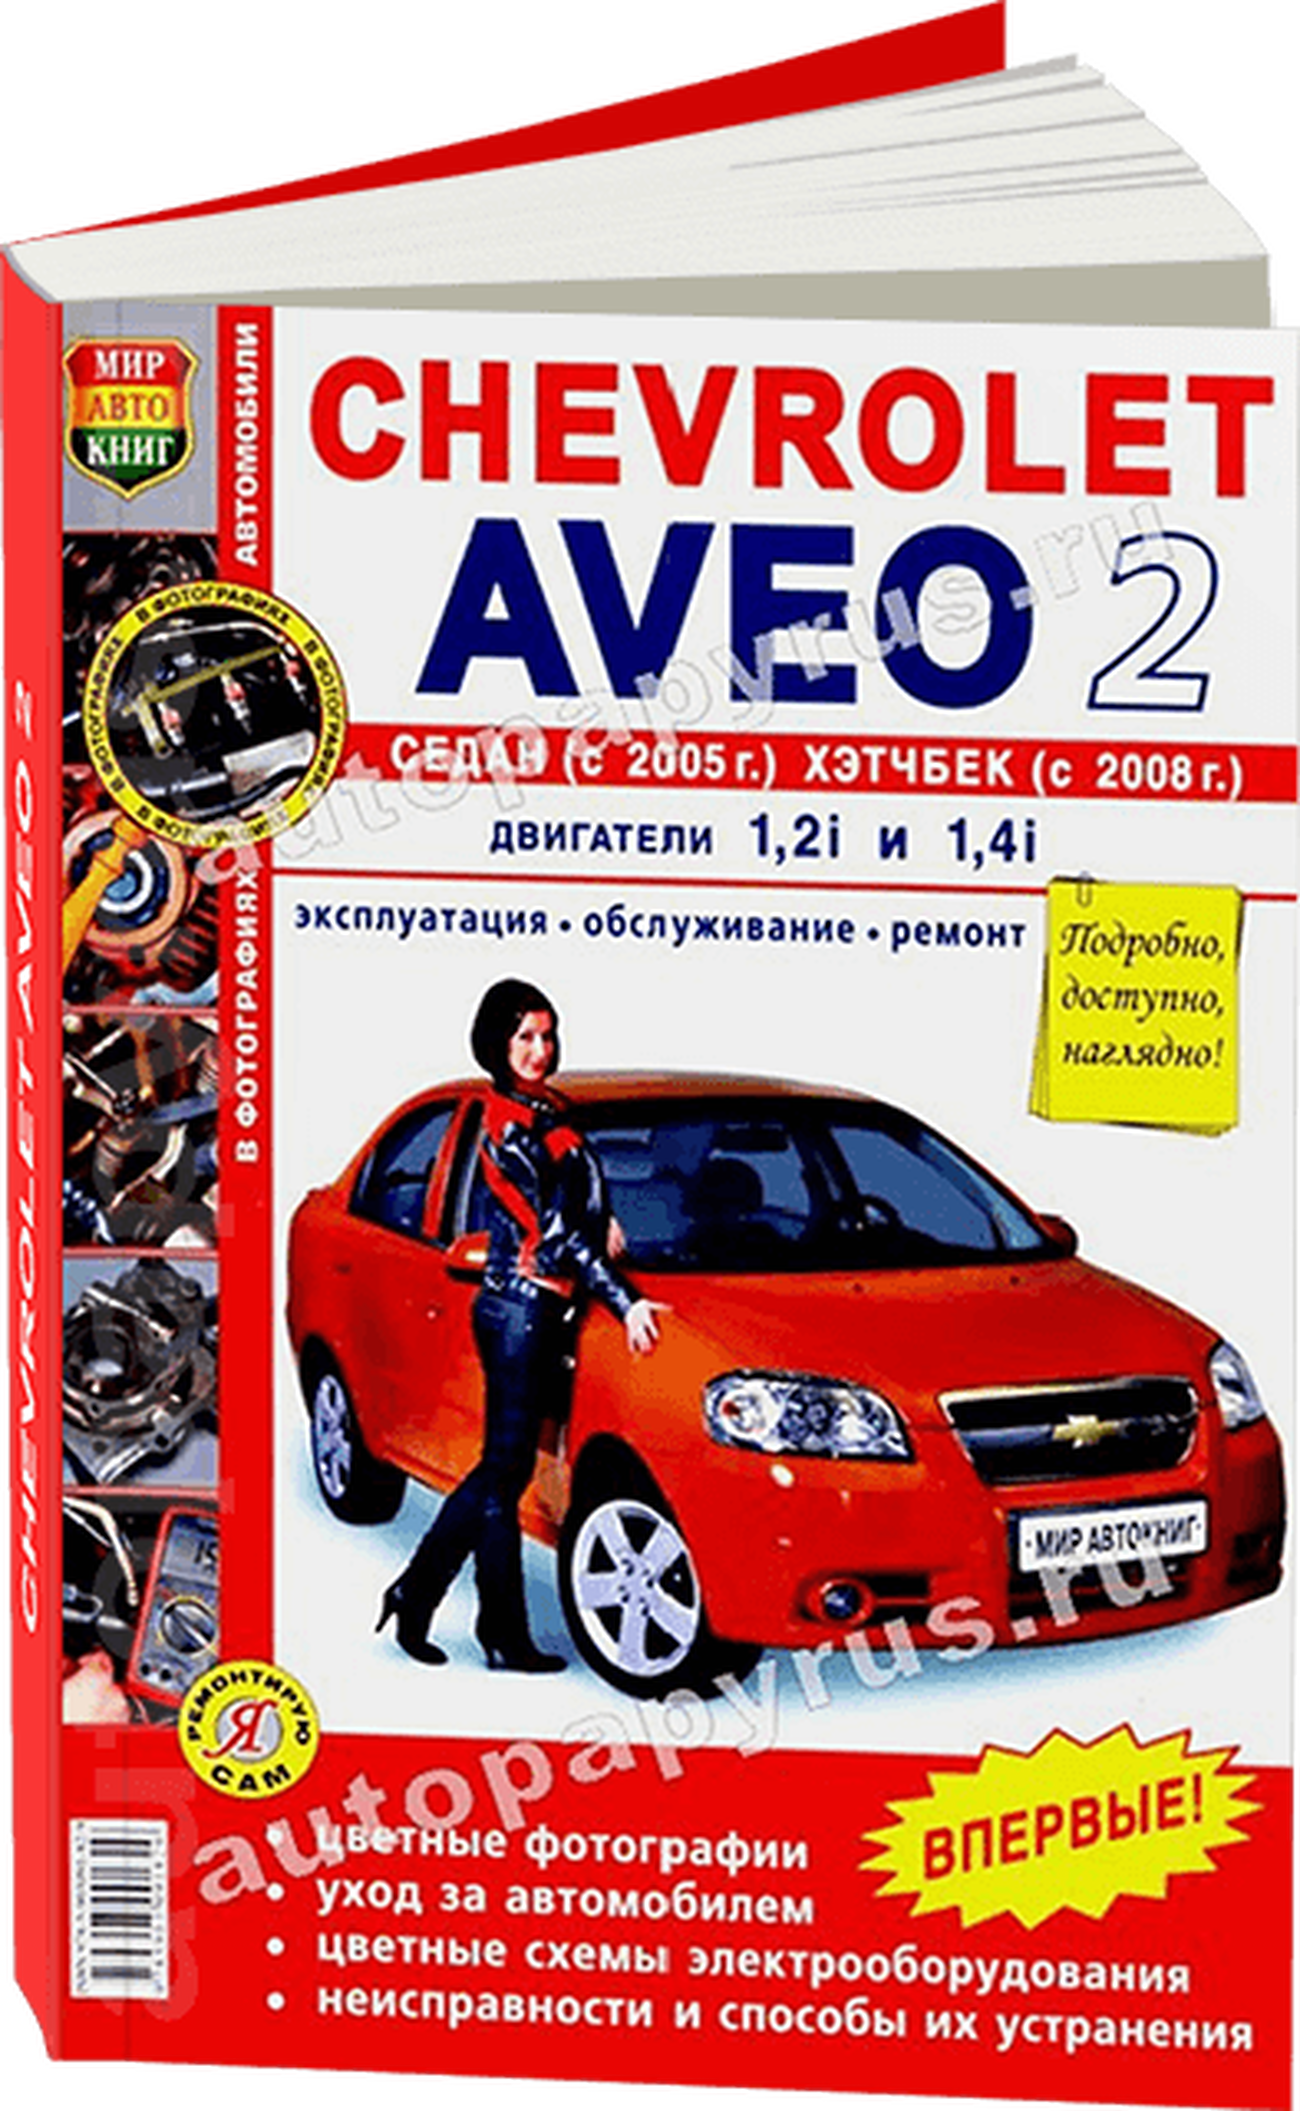 Книга: CHEVROLET AVEO II (б) с 2005 г.в., рем., экспл., то, ЦВЕТ. фото., сер ЯРС | Мир Автокниг